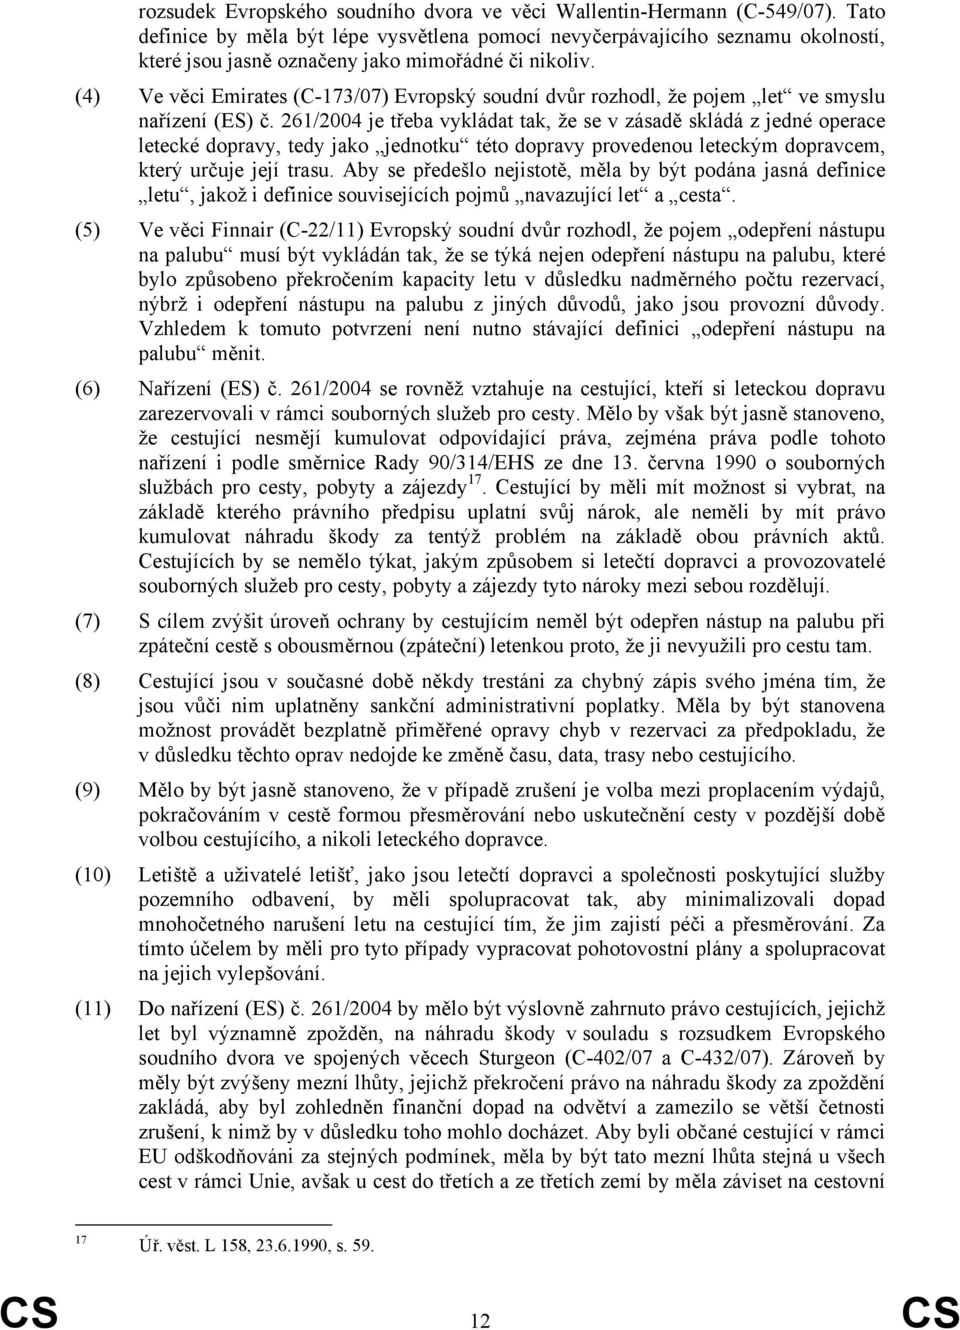 (4) Ve věci Emirates (C-173/07) Evropský soudní dvůr rozhodl, že pojem let ve smyslu nařízení (ES) č.